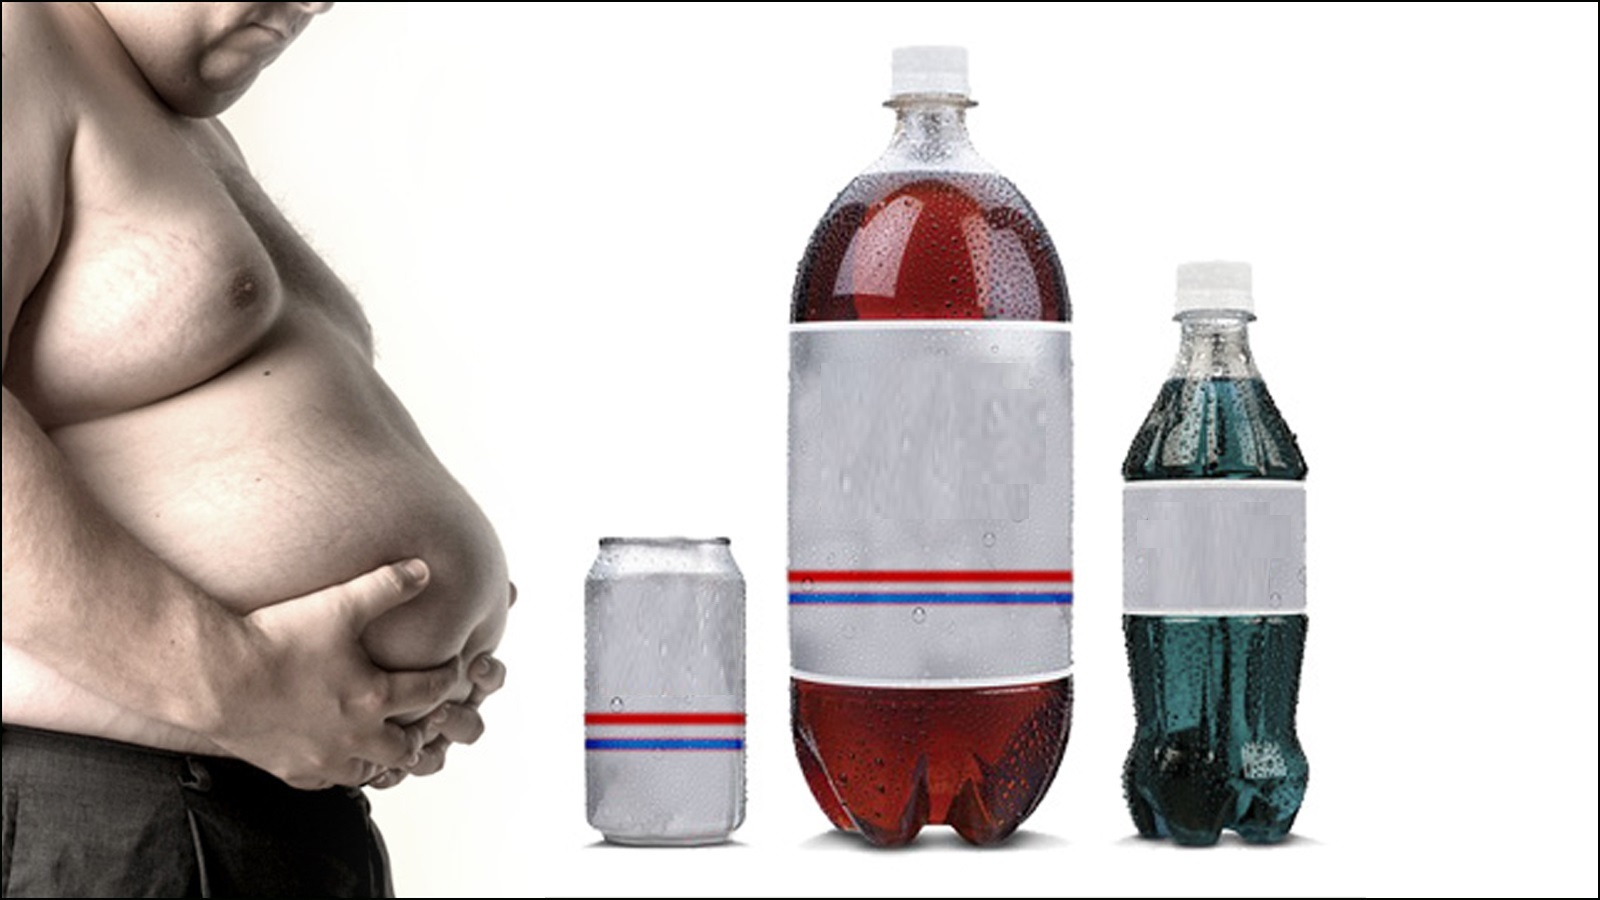 المشروبات السكرية تزيد الدهون في منطقة الخصر والبطن